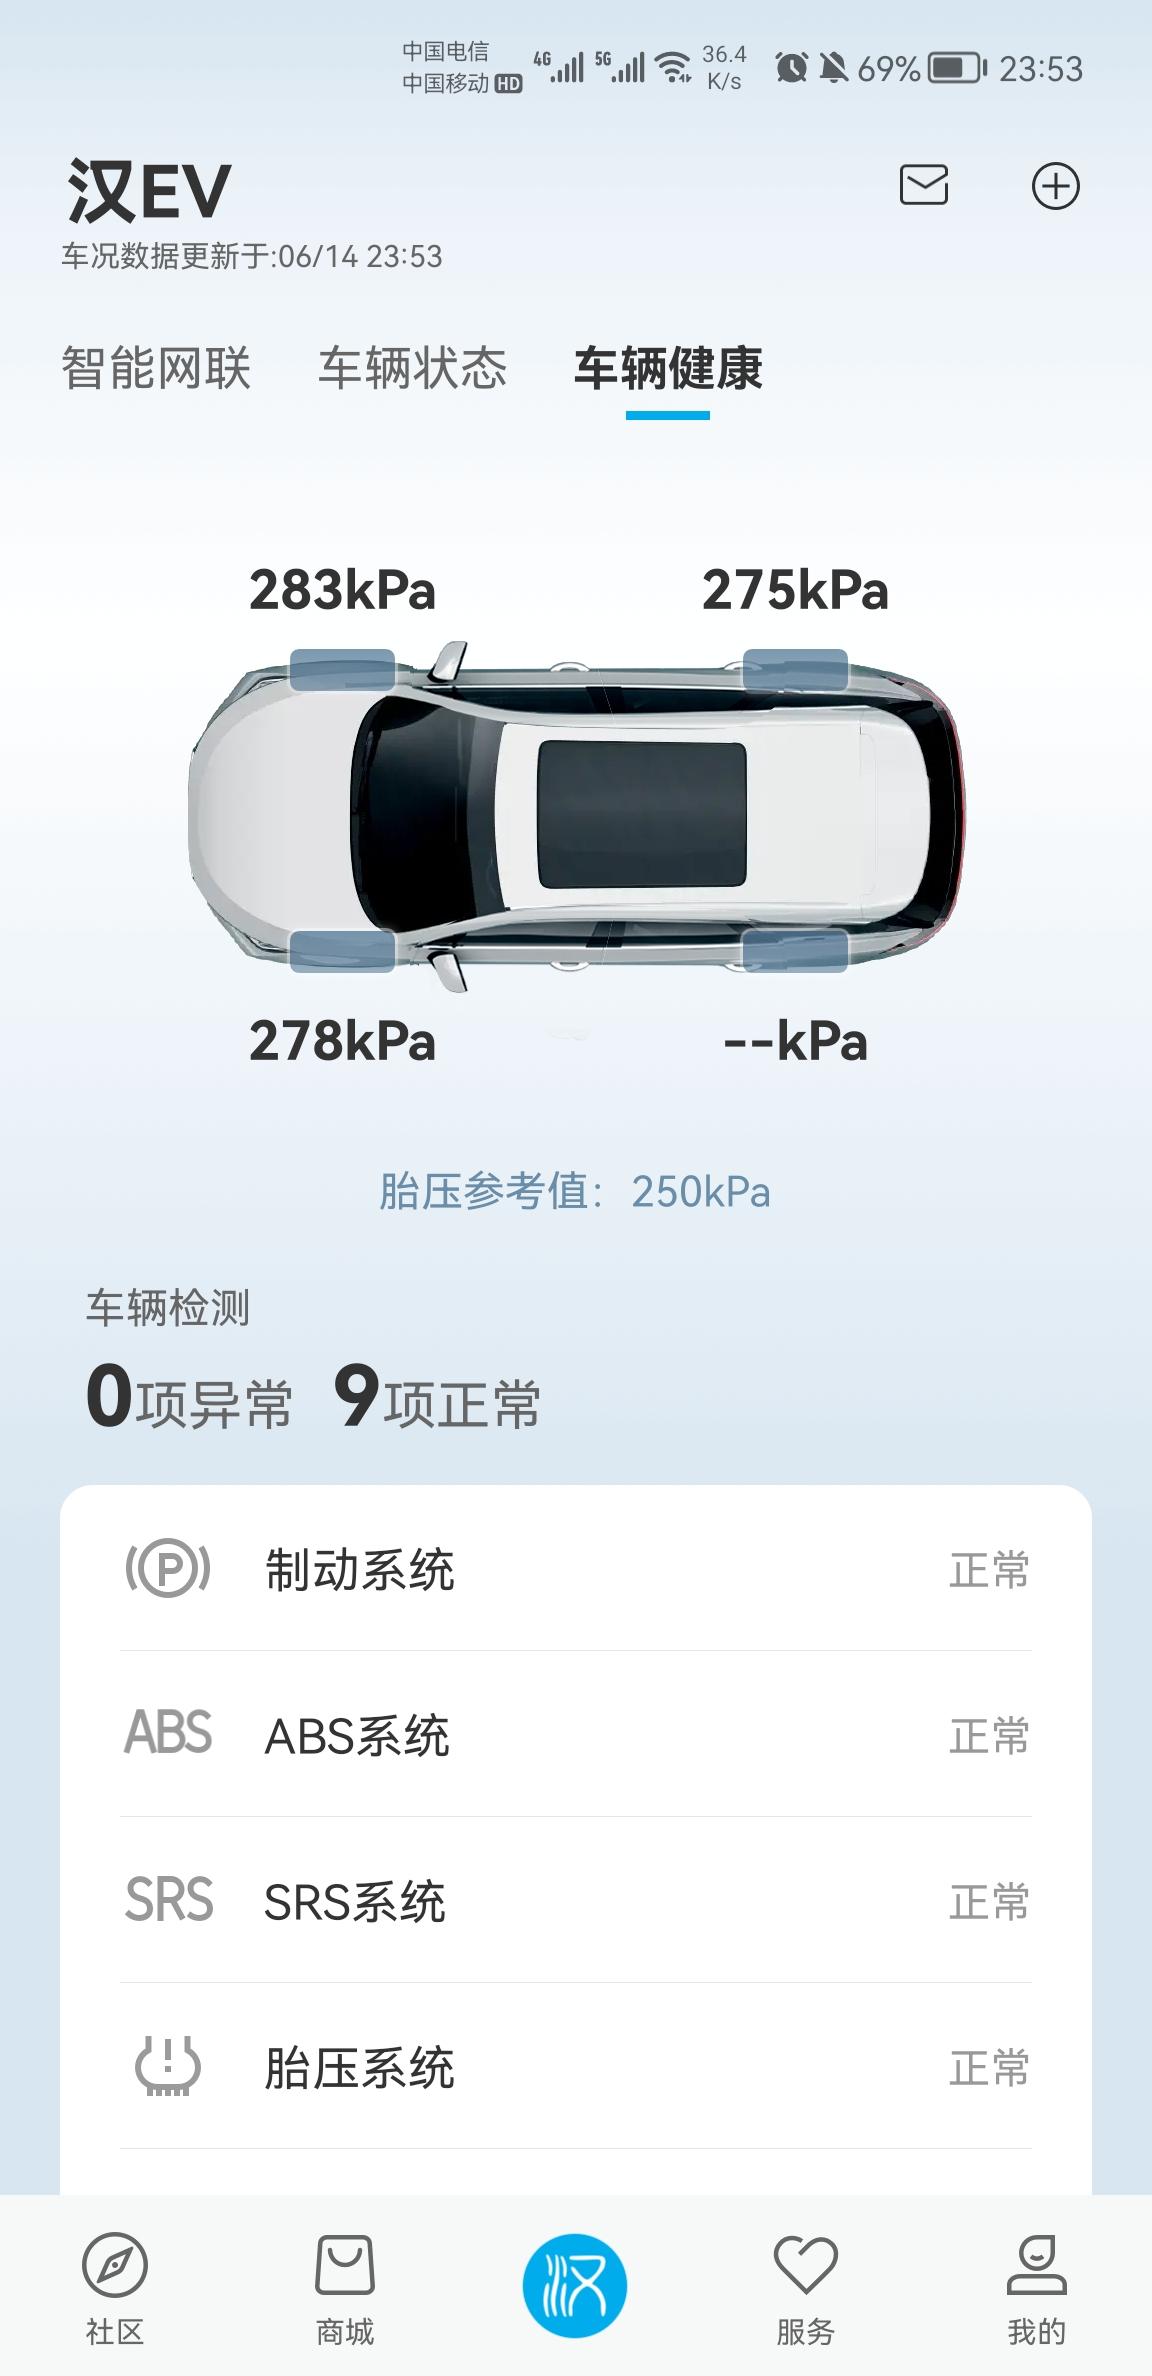 比亚迪汉EV app不显示左后轮的胎压。车内胎压显示正常。